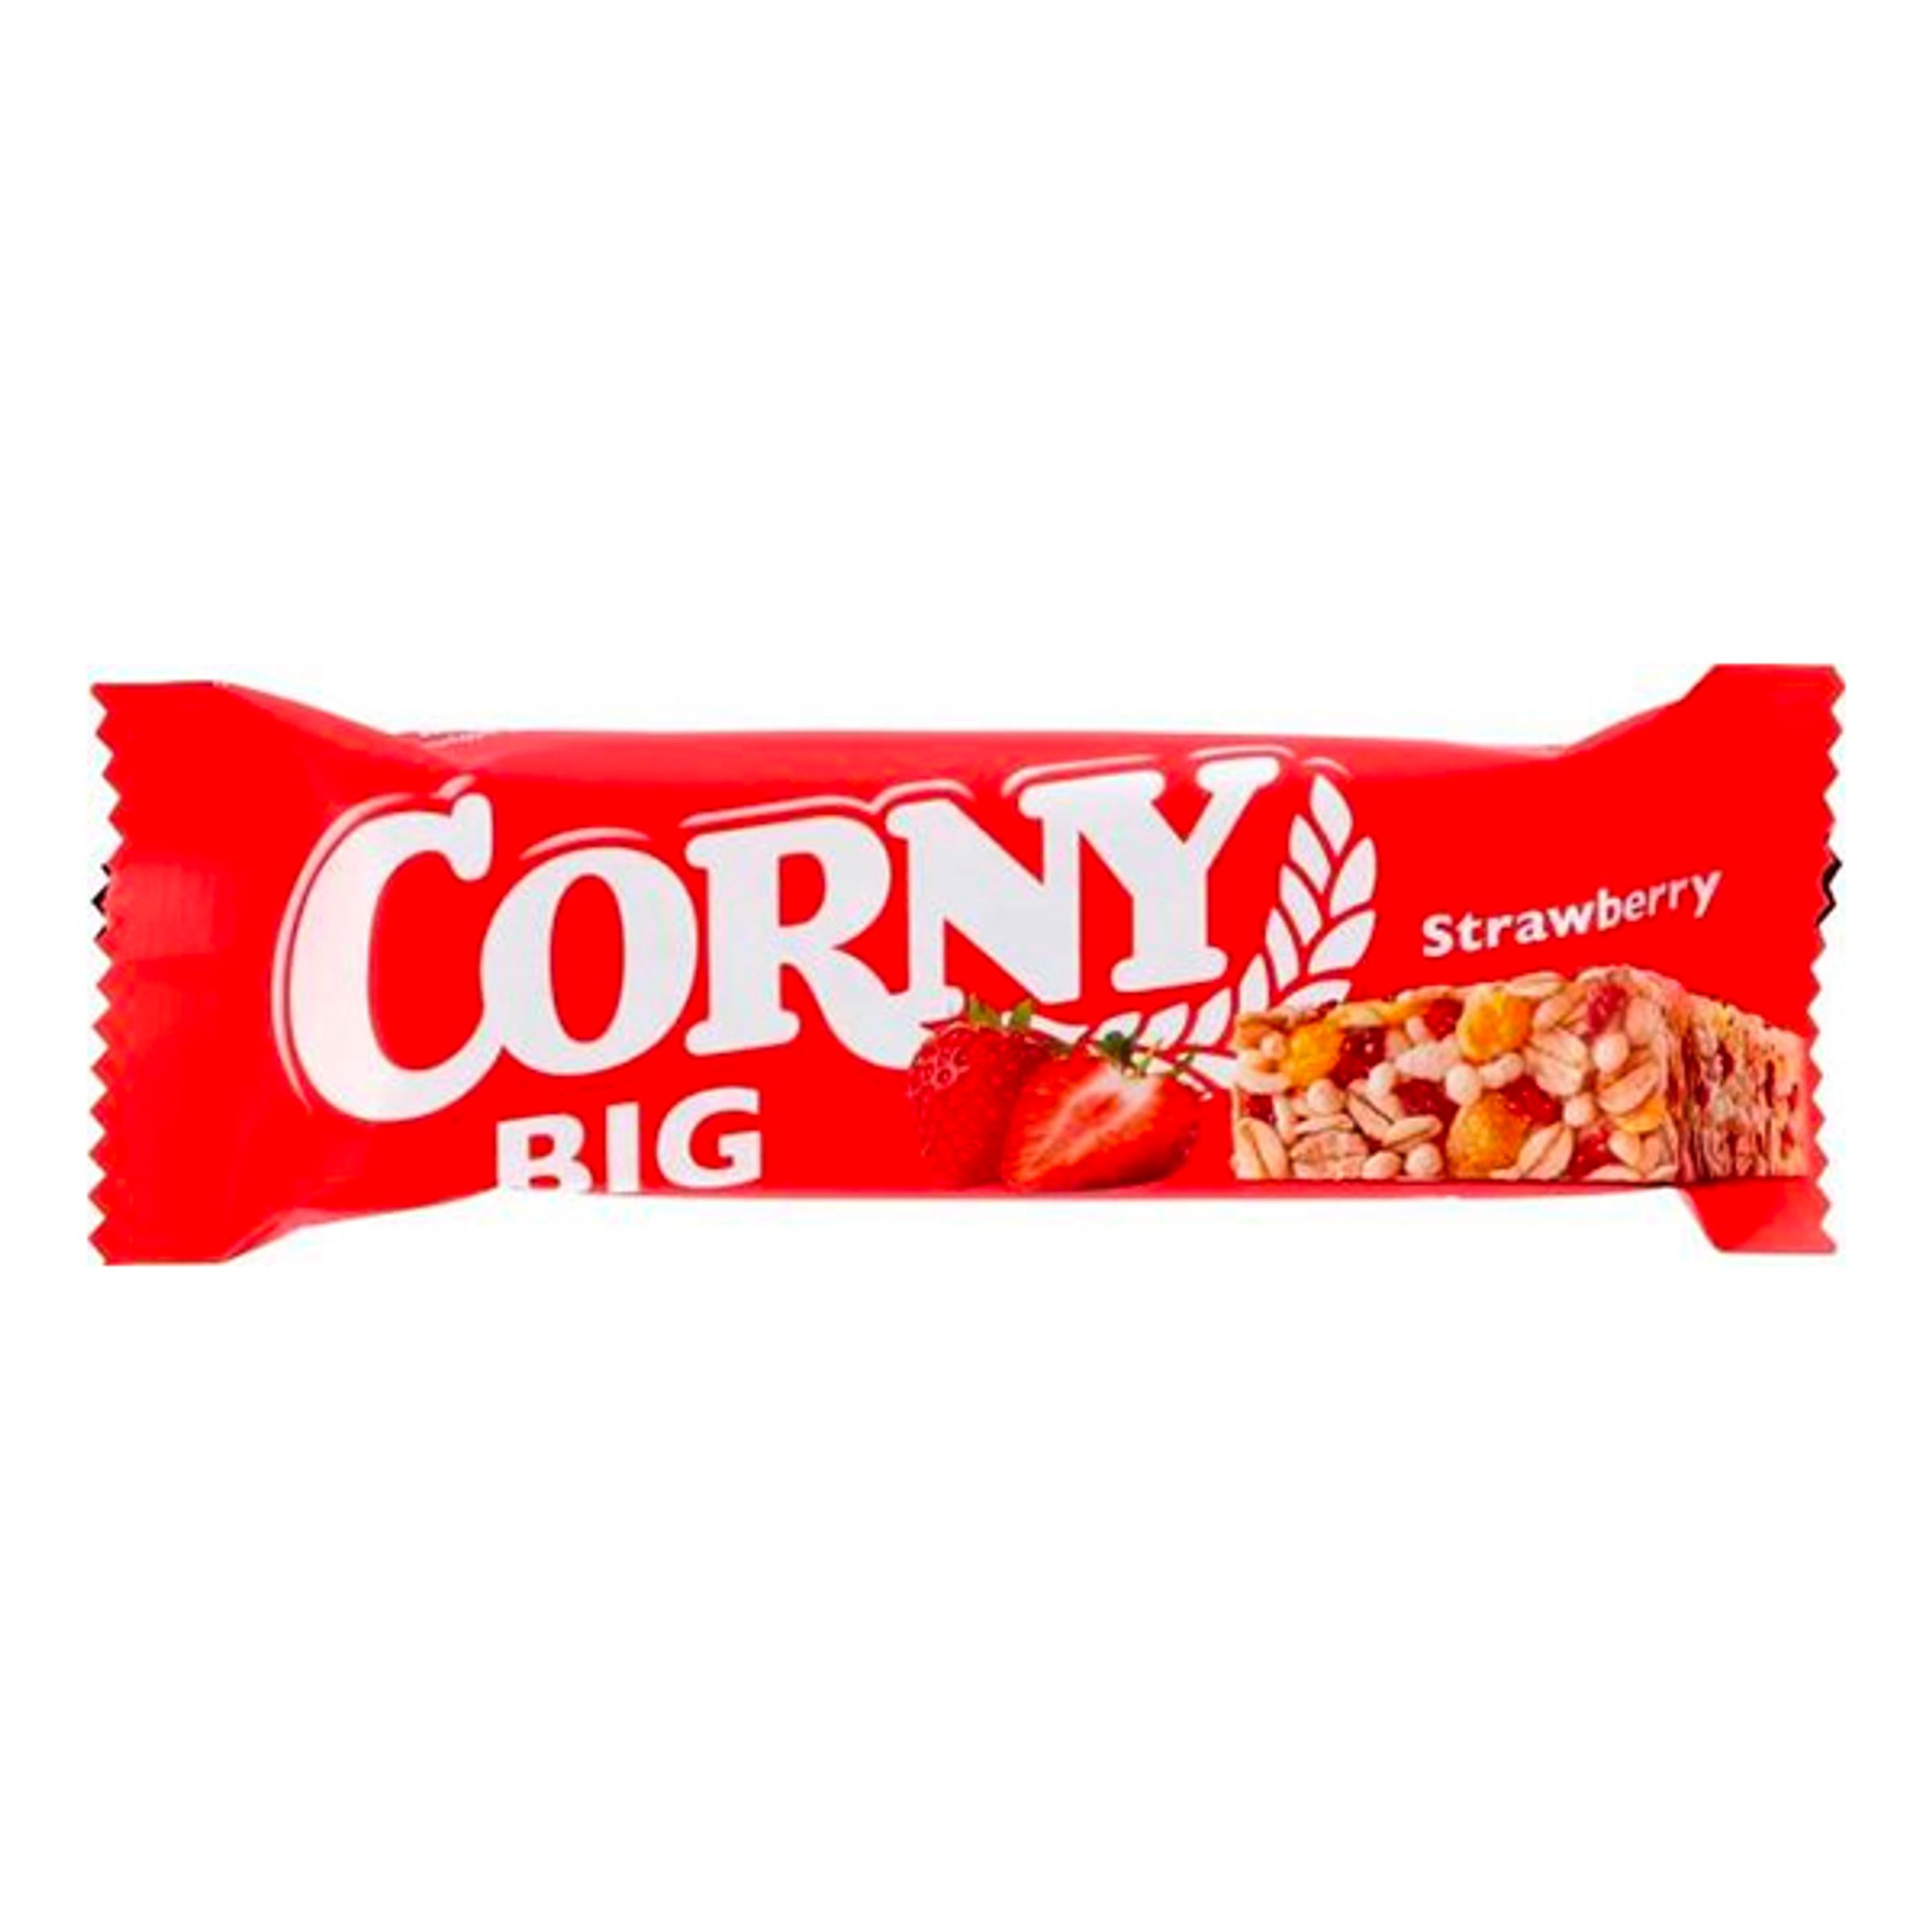 Corny Big Strawberry Storpack - 24-pack